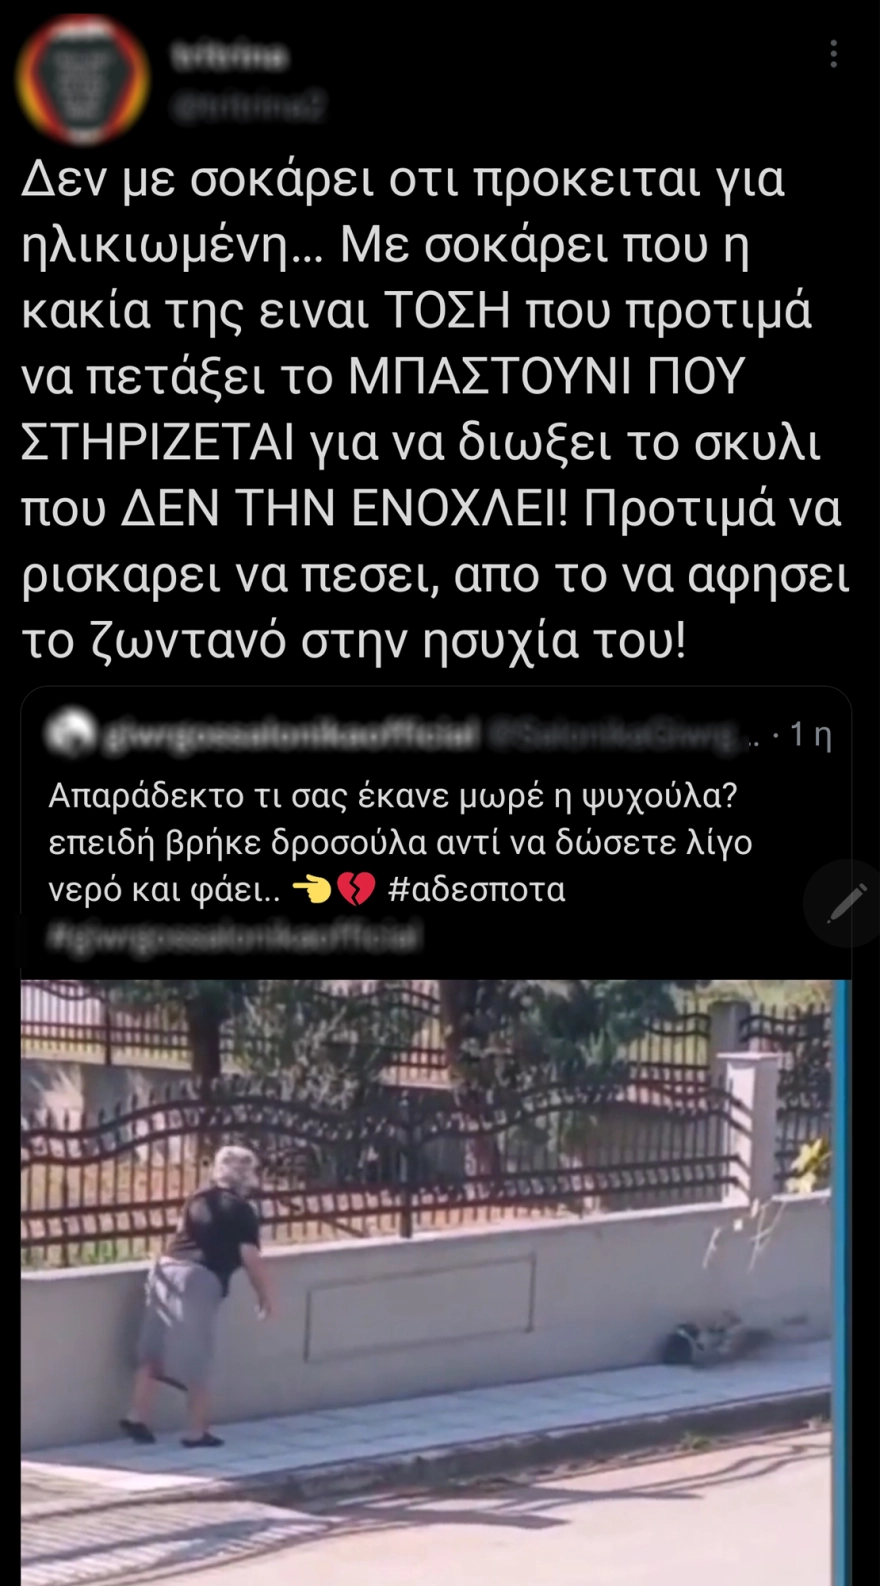 Θεσσαλονίκη: 75χρονη πέταξε μπαστούνι σε σκυλί - Σχηματίστηκε δικογραφία ΒΙΝΤΕΟ